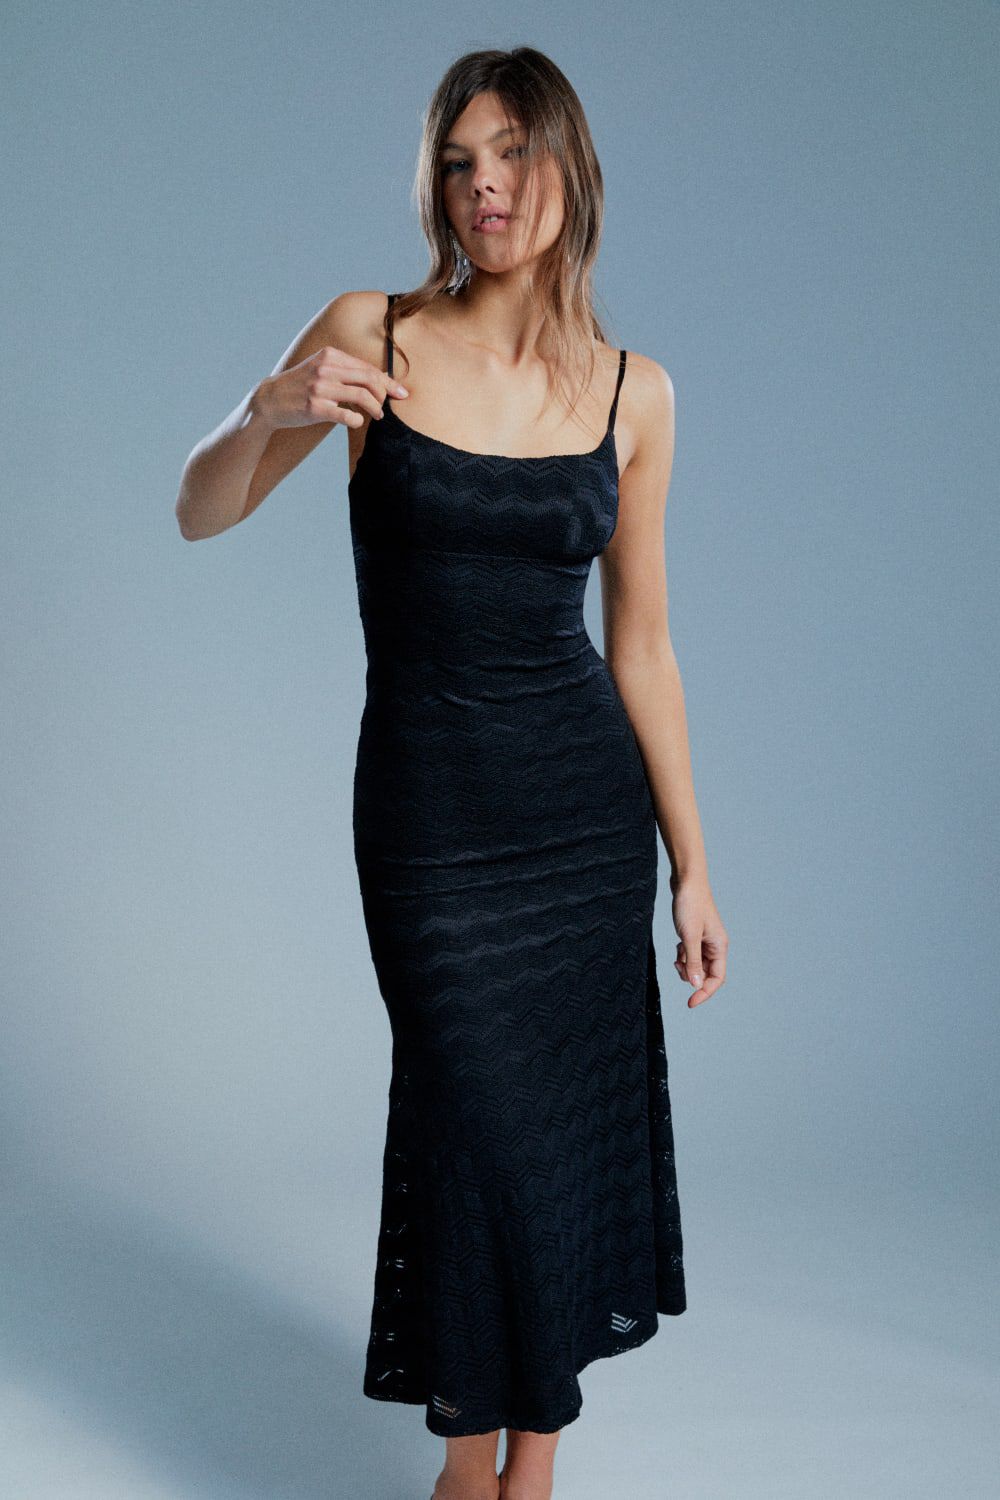 Adoni Mesh Midi Dress in Black | Bardot